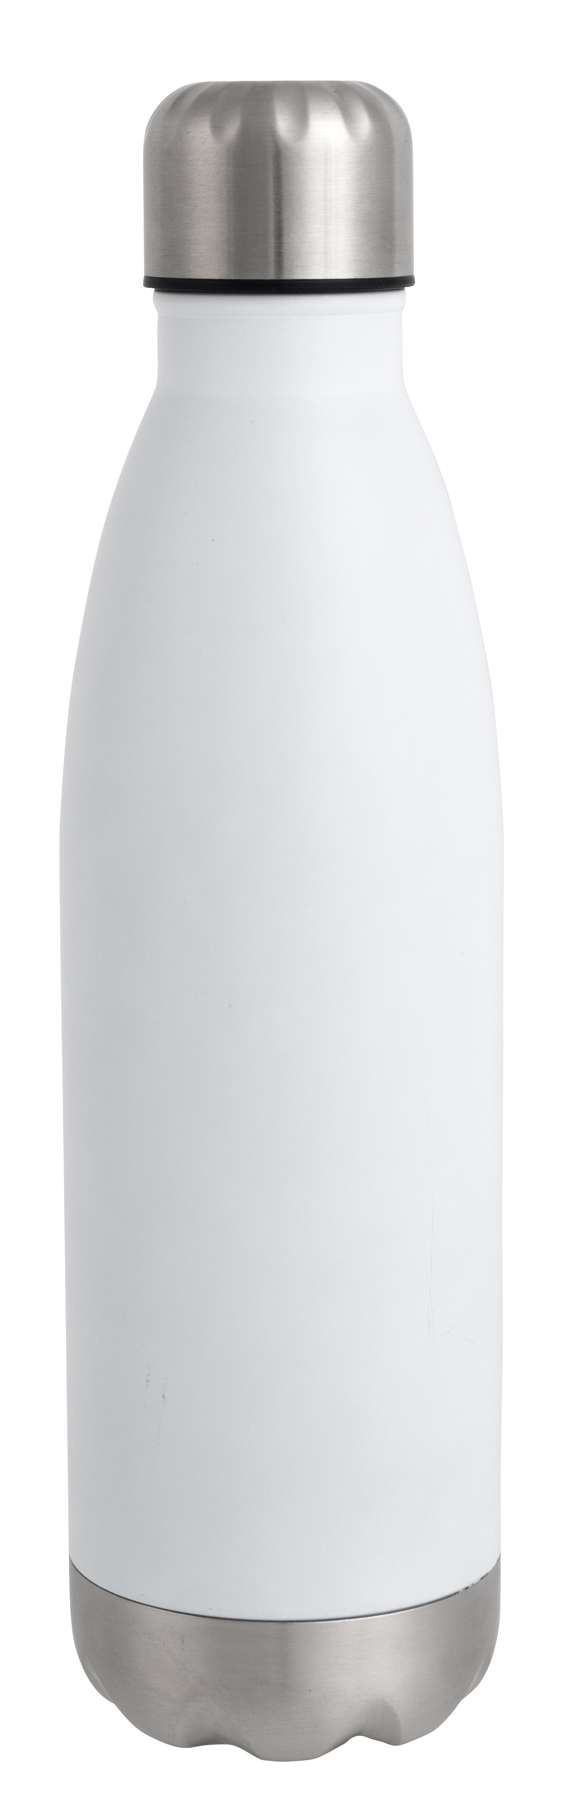 Double-walled vacuum bottle GOLDEN TASTE - white